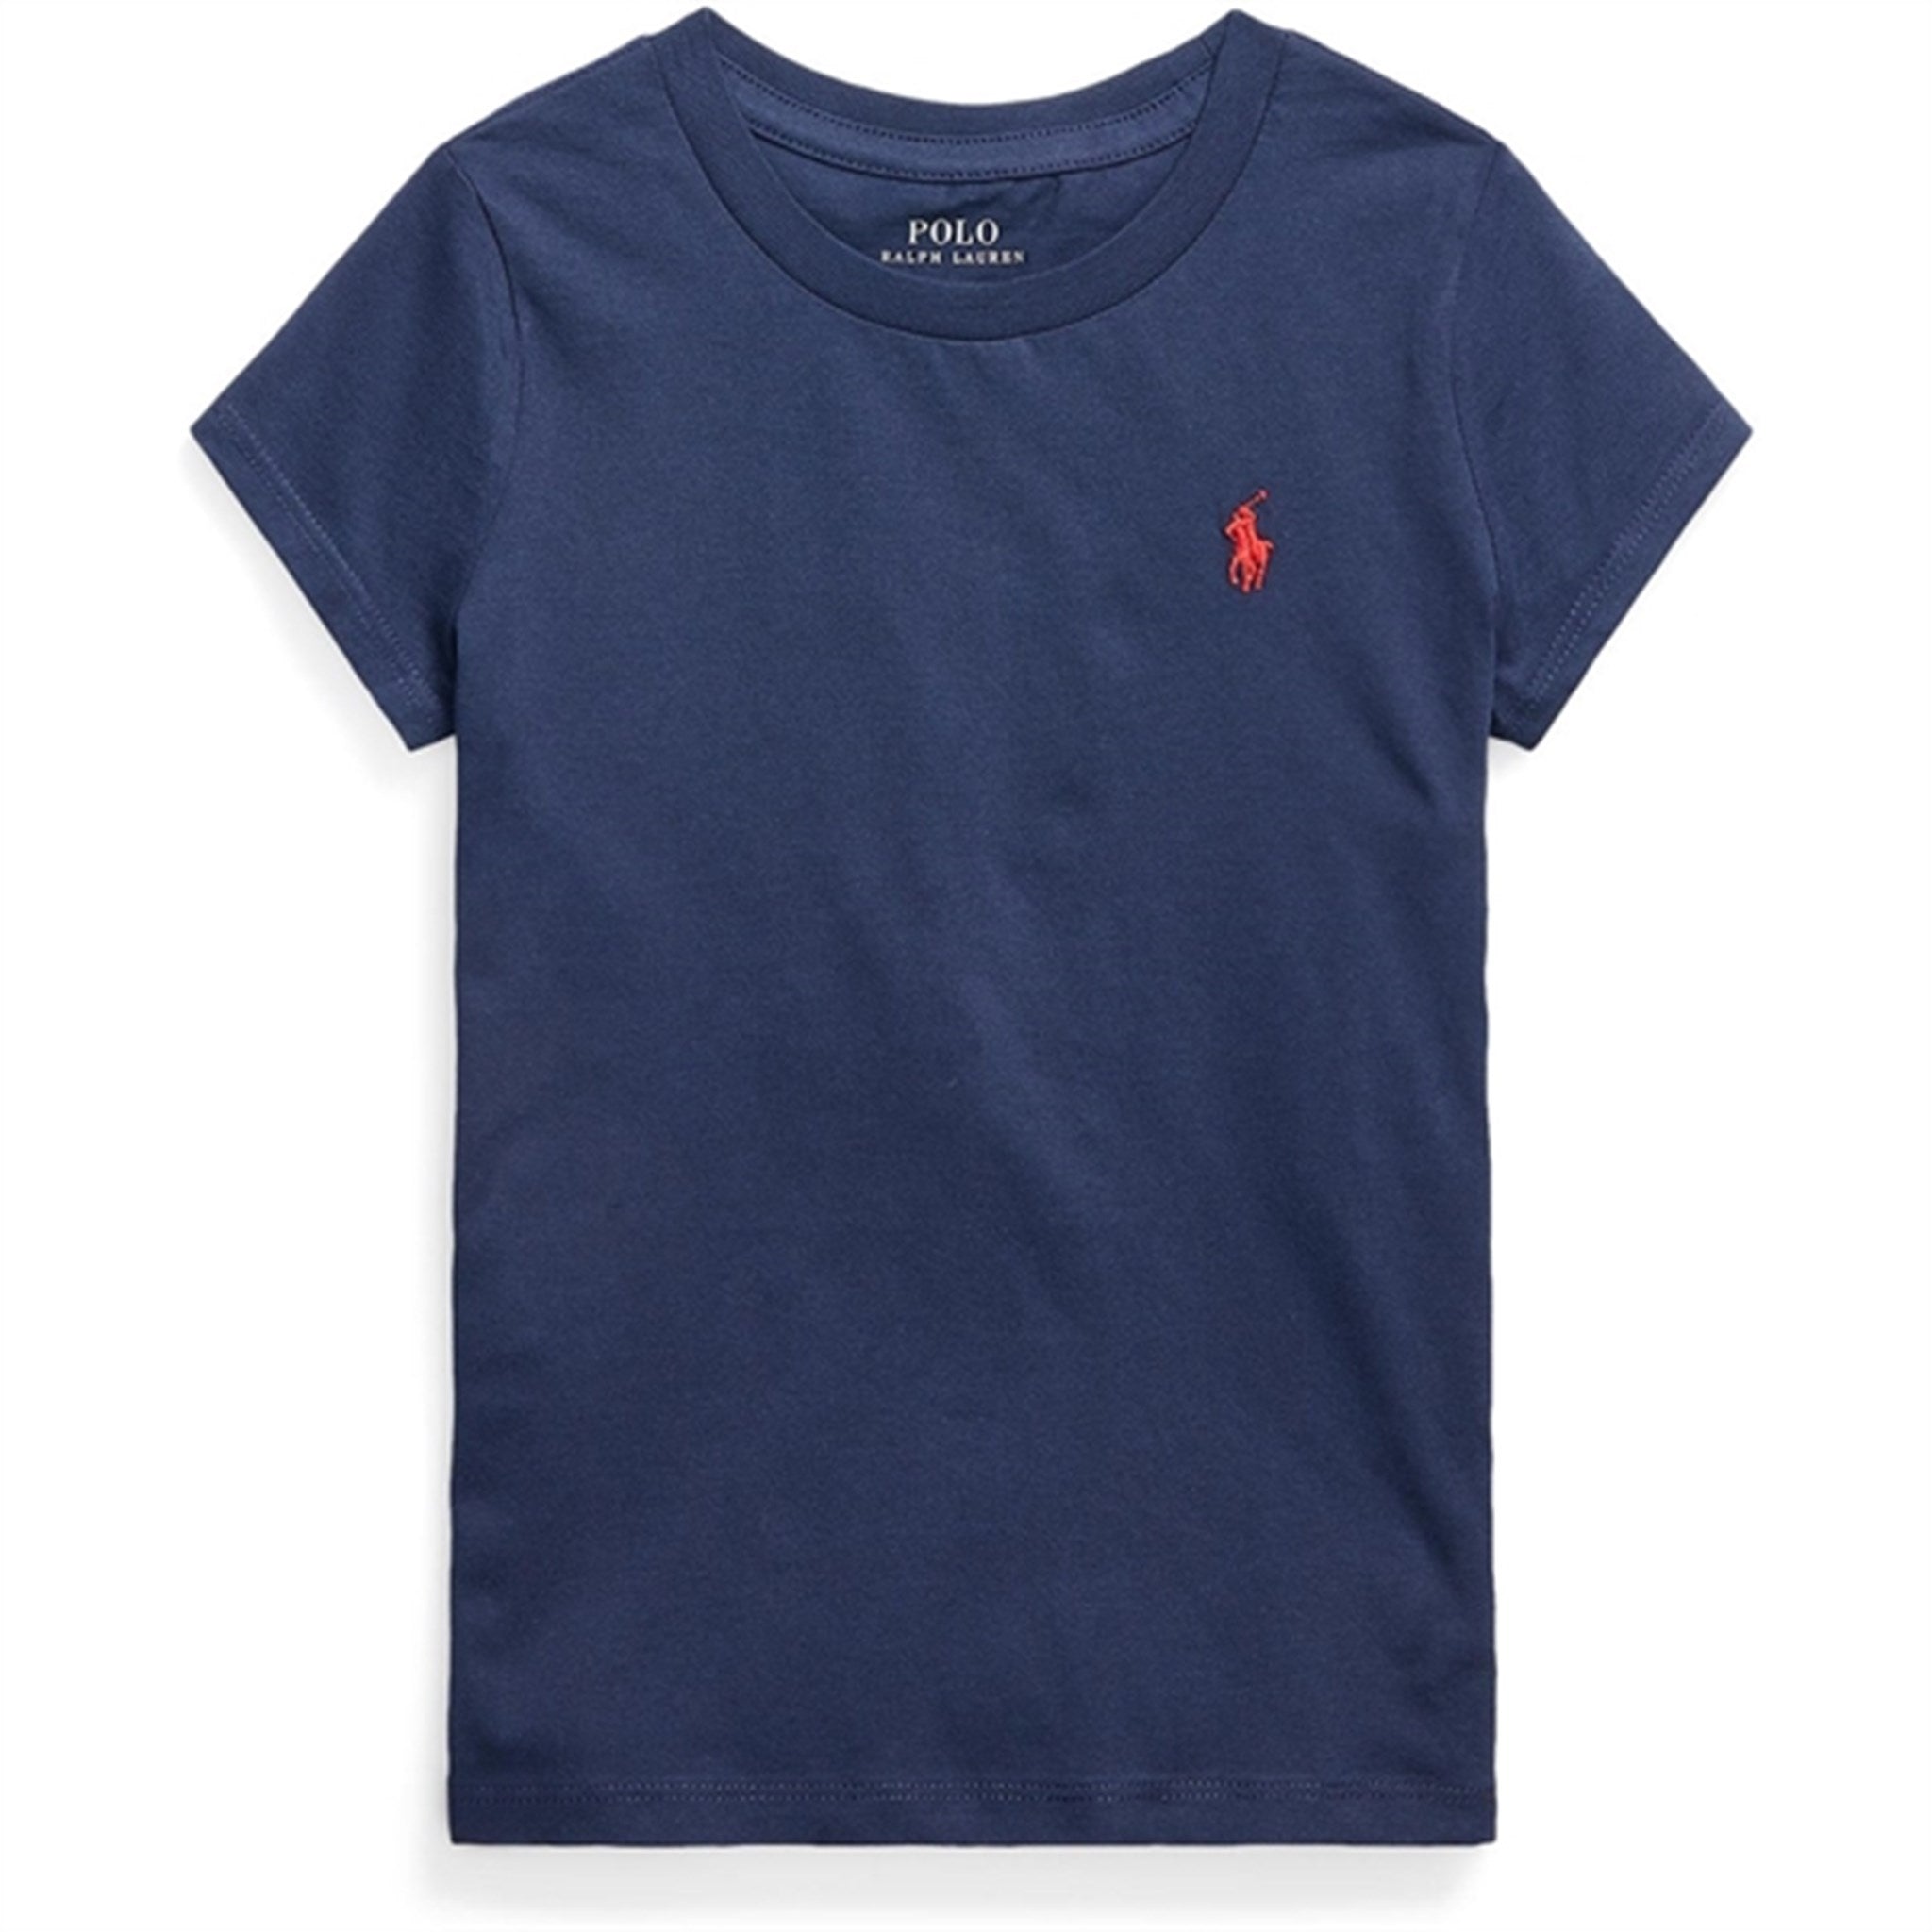 Polo Ralph Lauren Girls T-Shirt Newport Navy